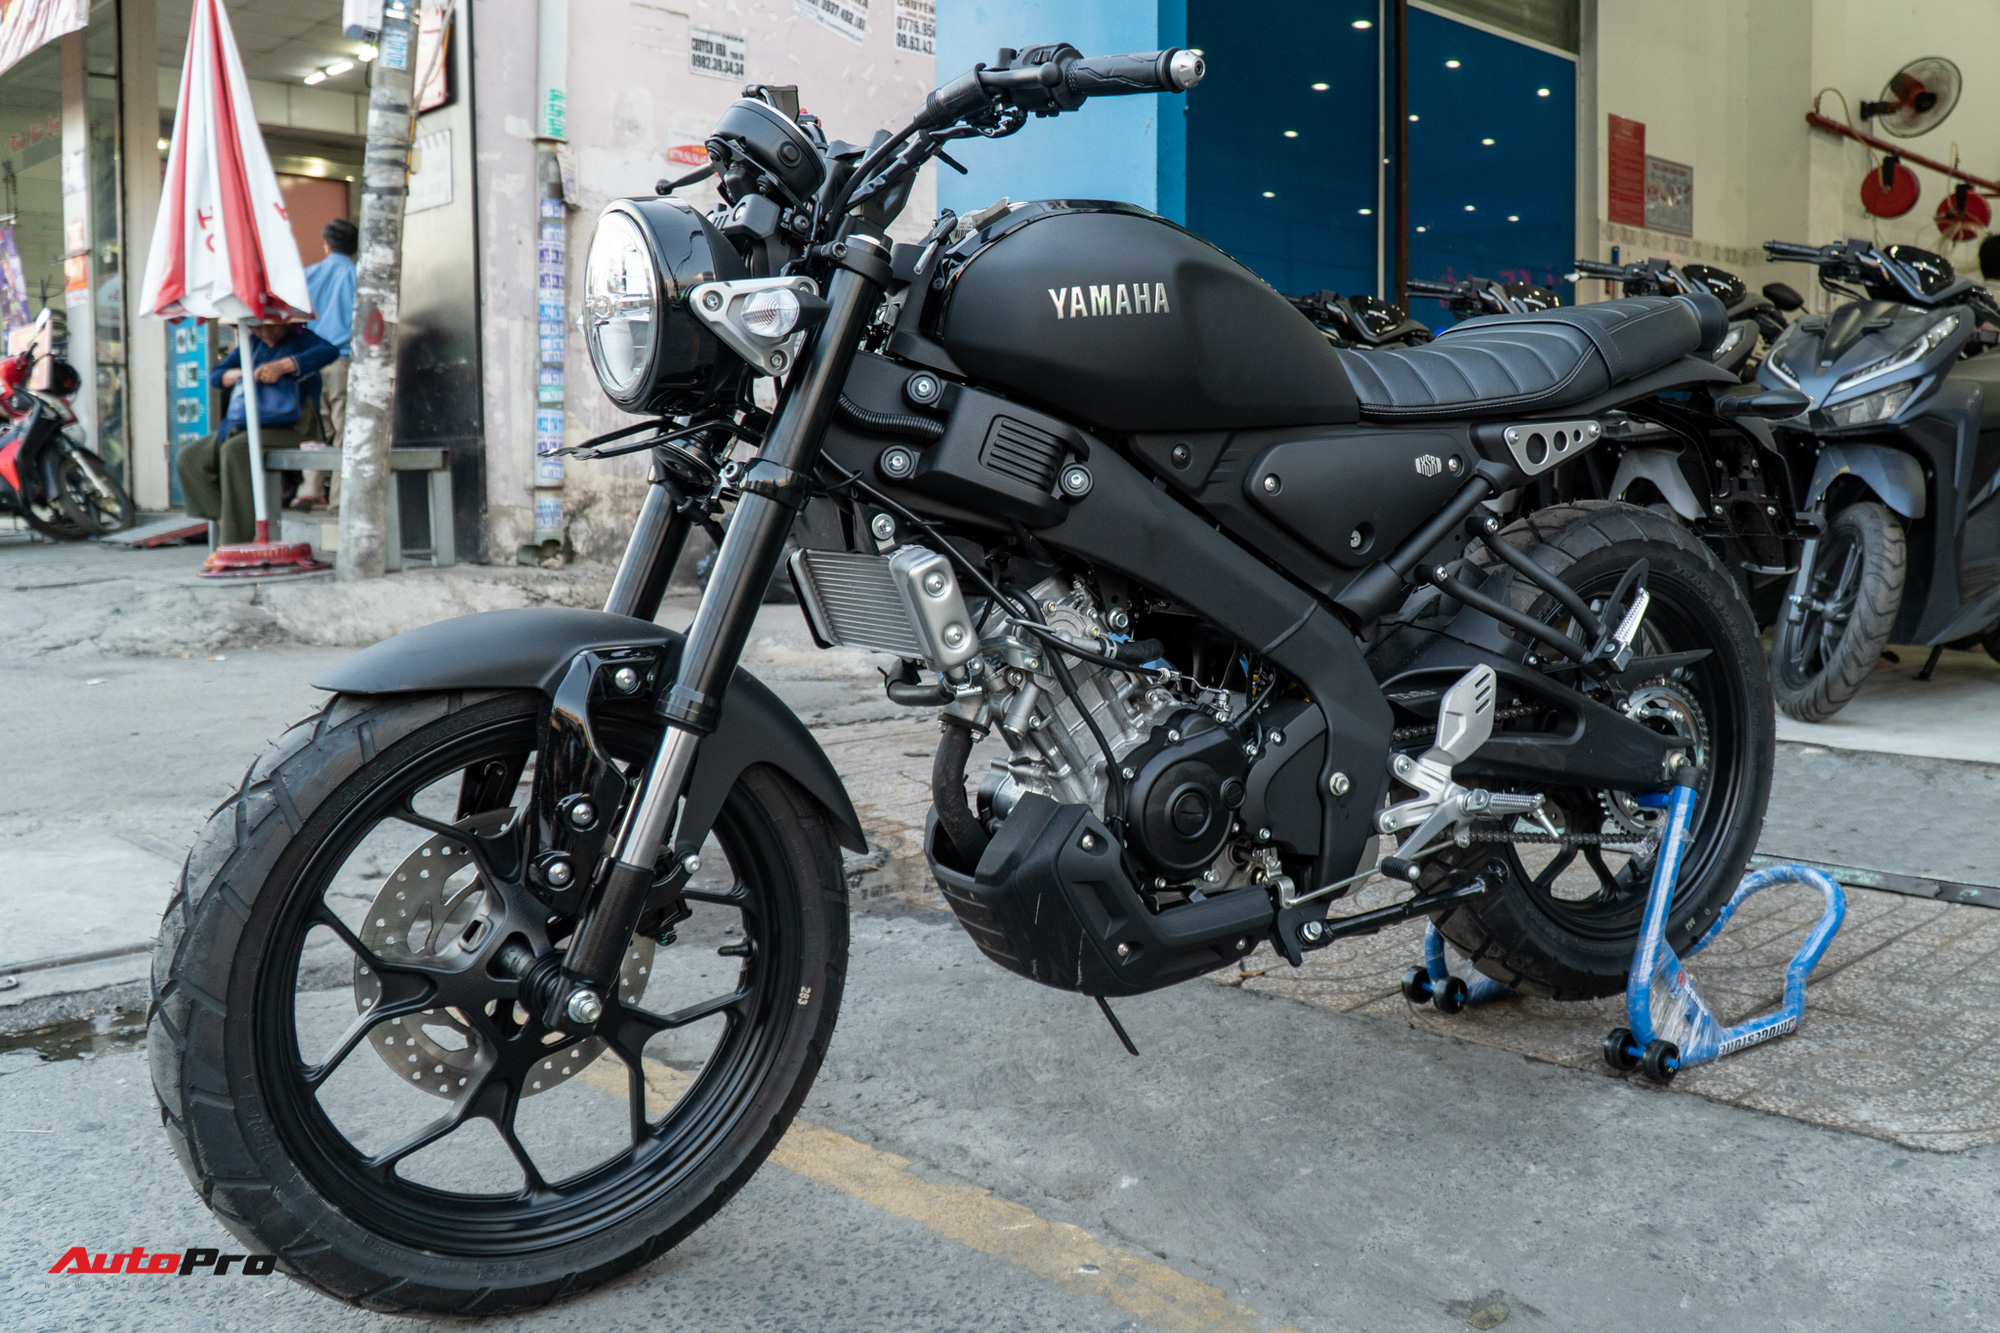 Yamaha XSR 155 lần đầu giảm giá 5 triệu đồng sau khi về Việt Nam chưa ...